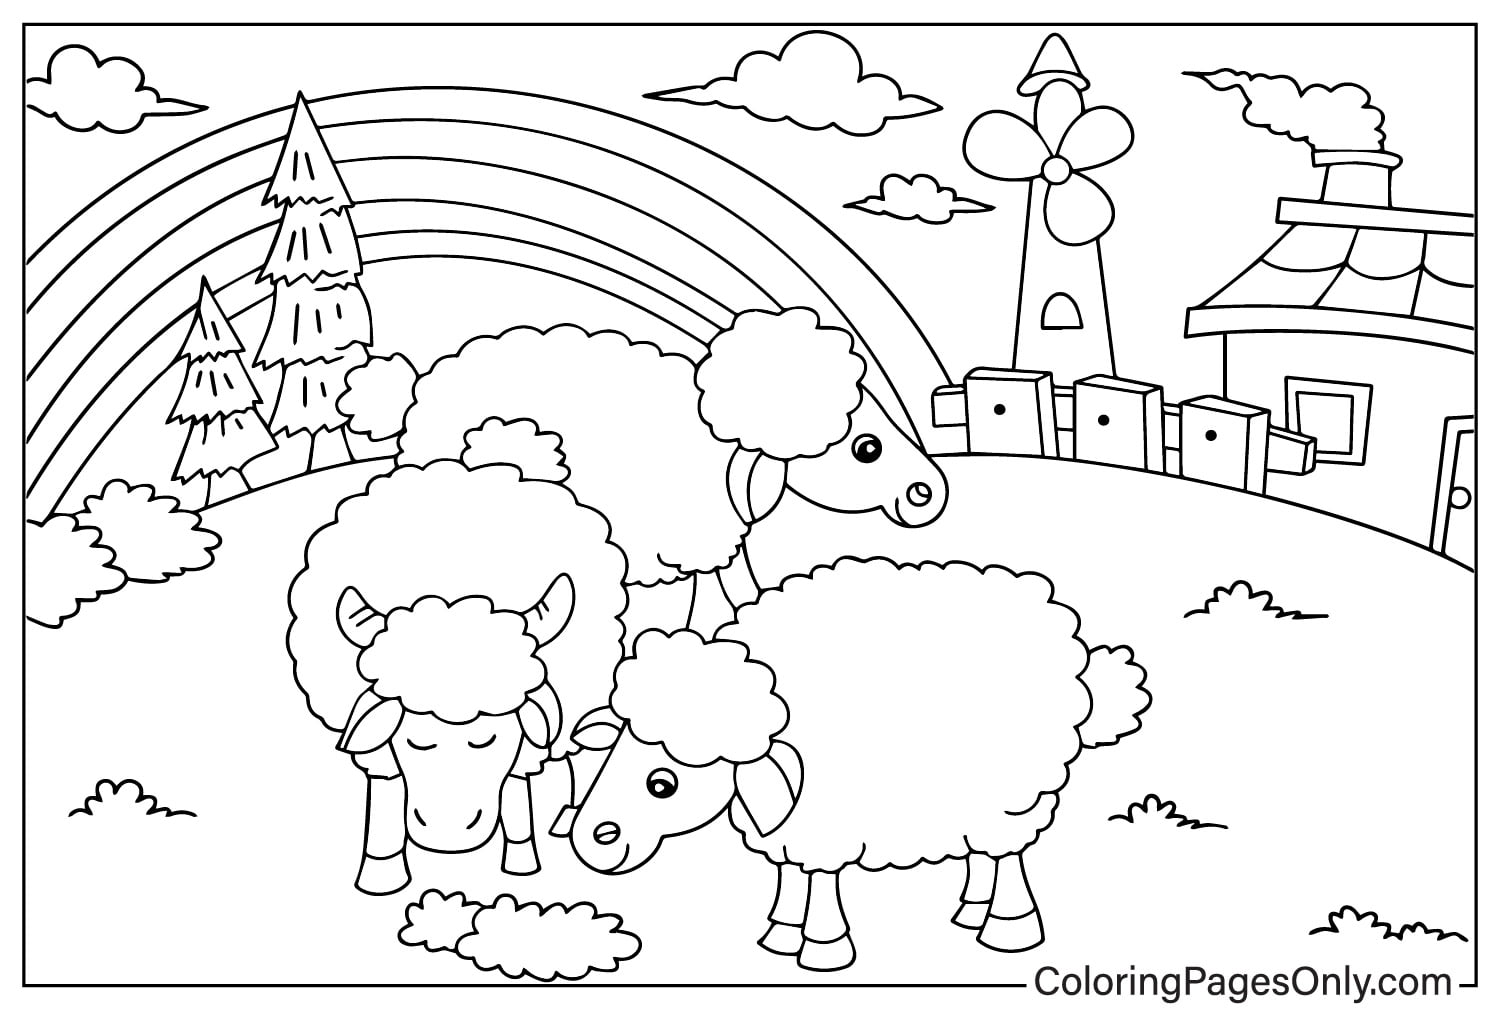 Pecore al pascolo nella fattoria di animali da fattoria